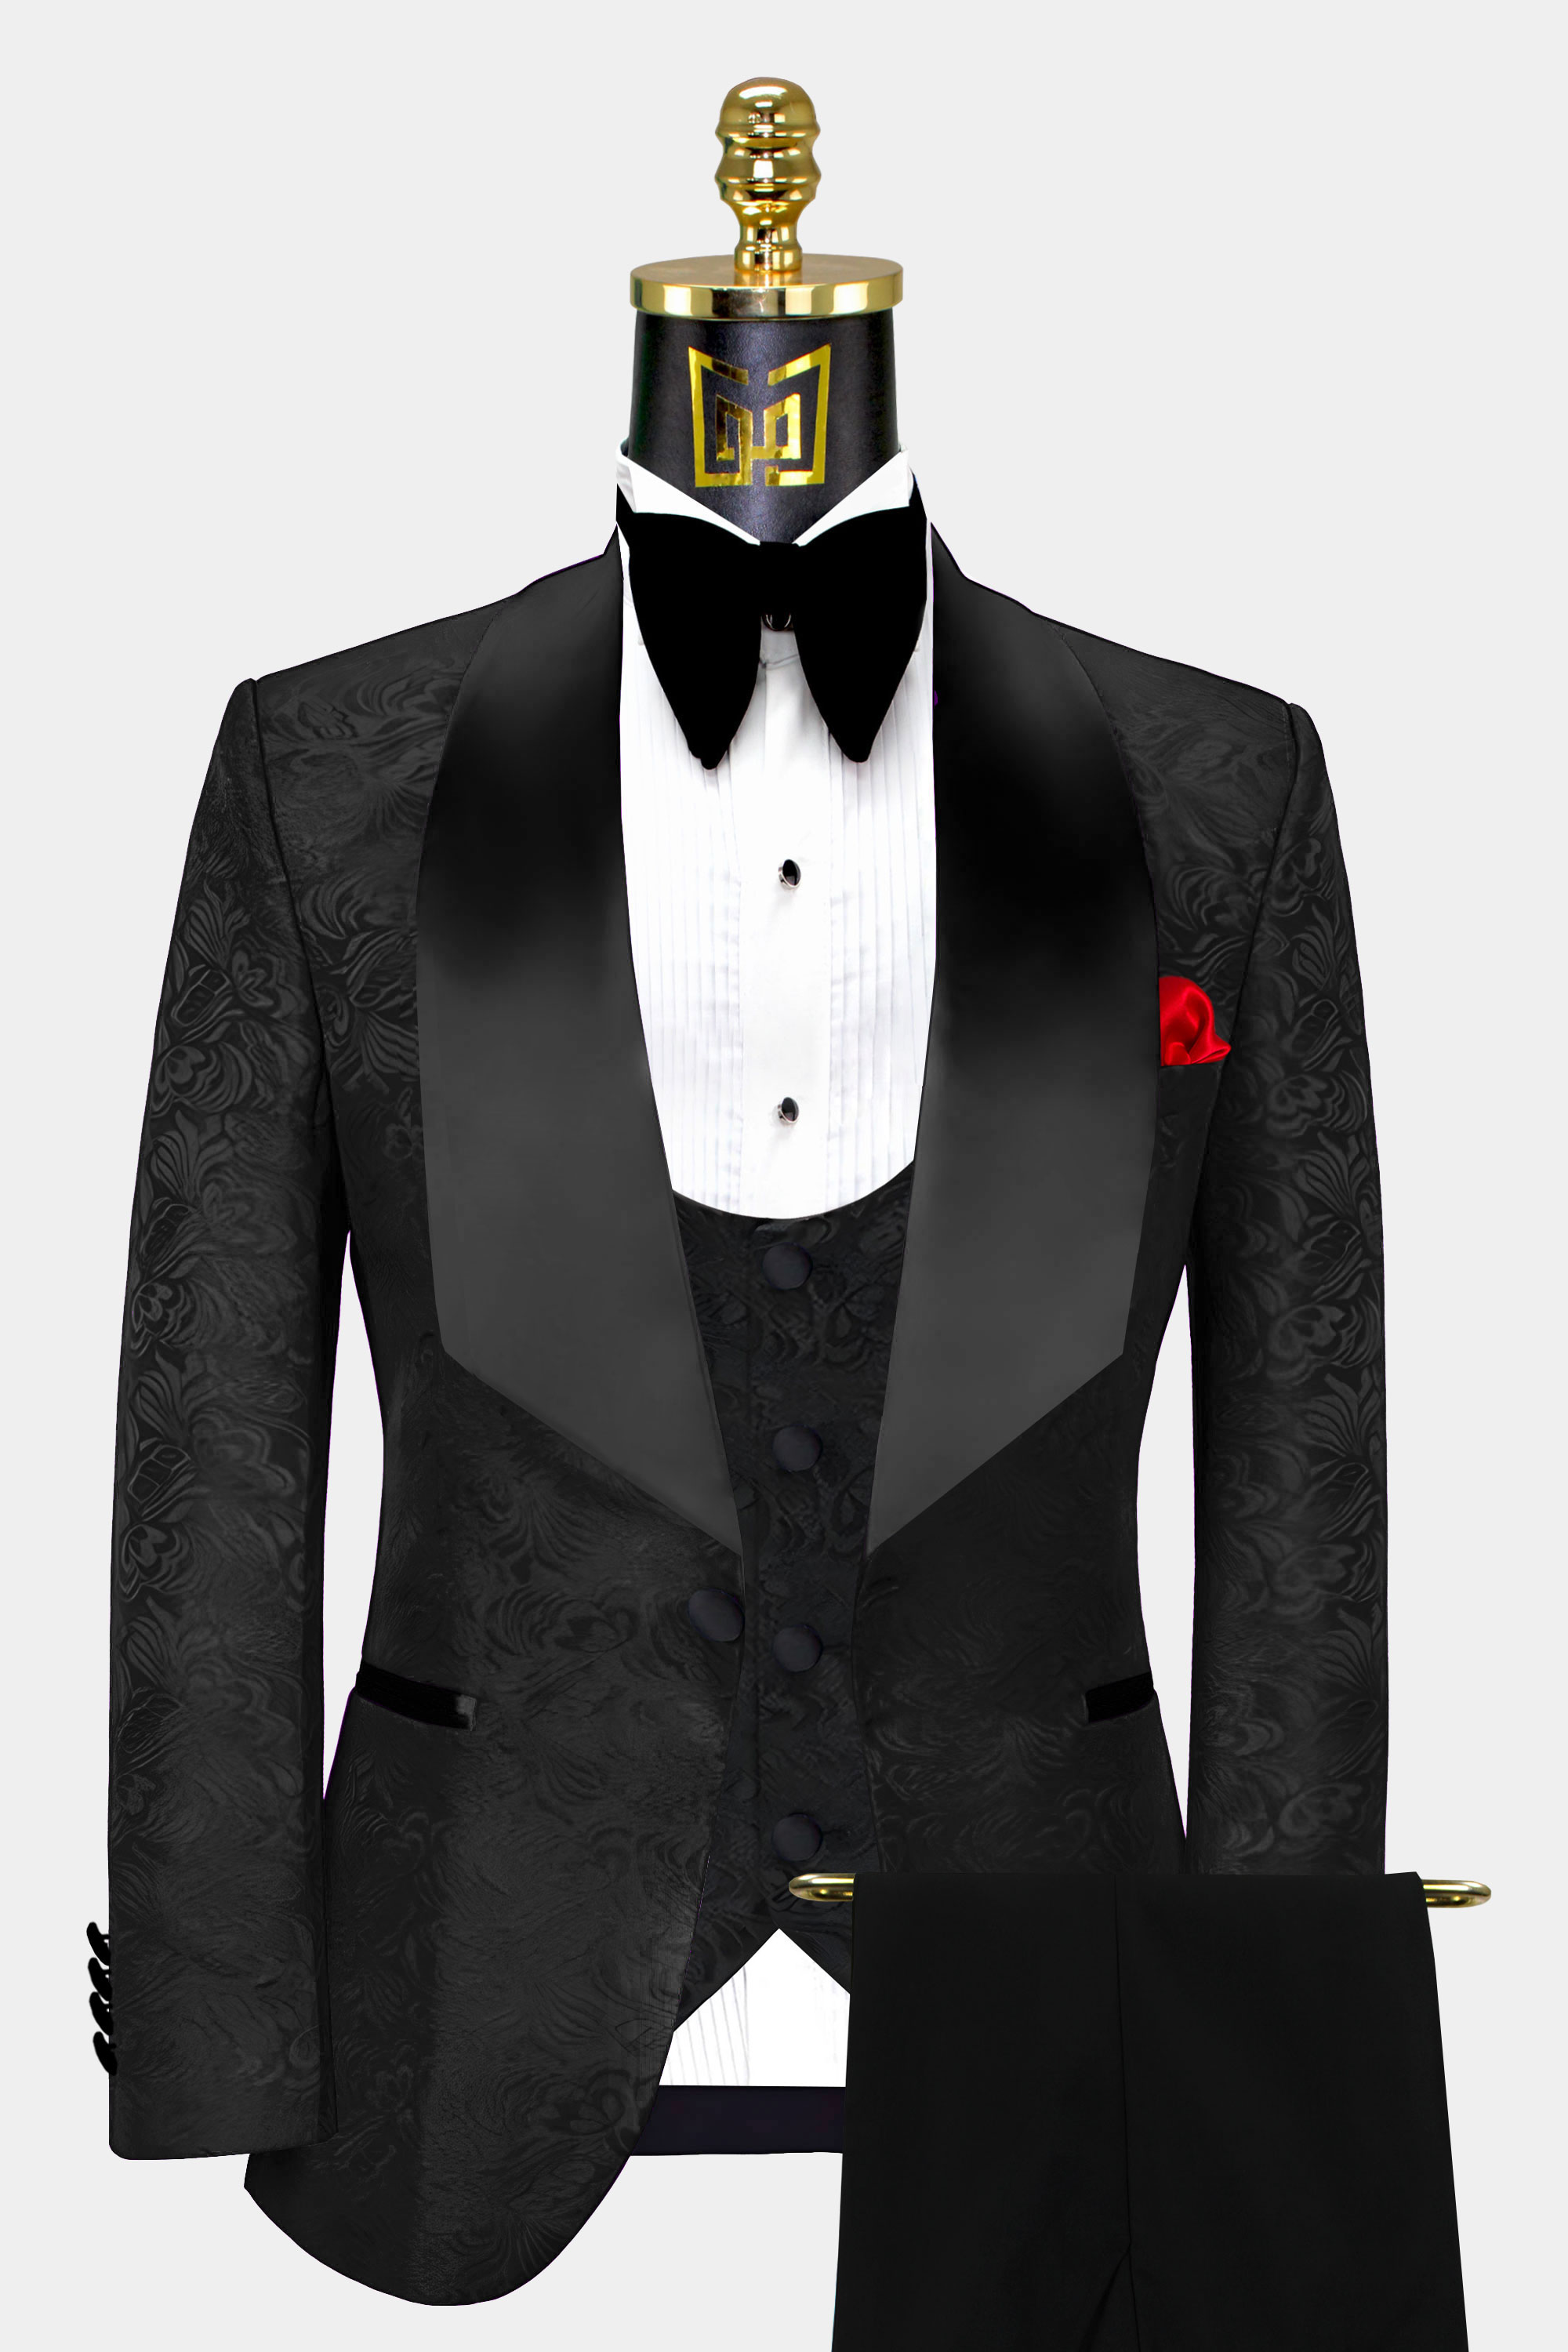 Full Black Wedding Suit | vlr.eng.br